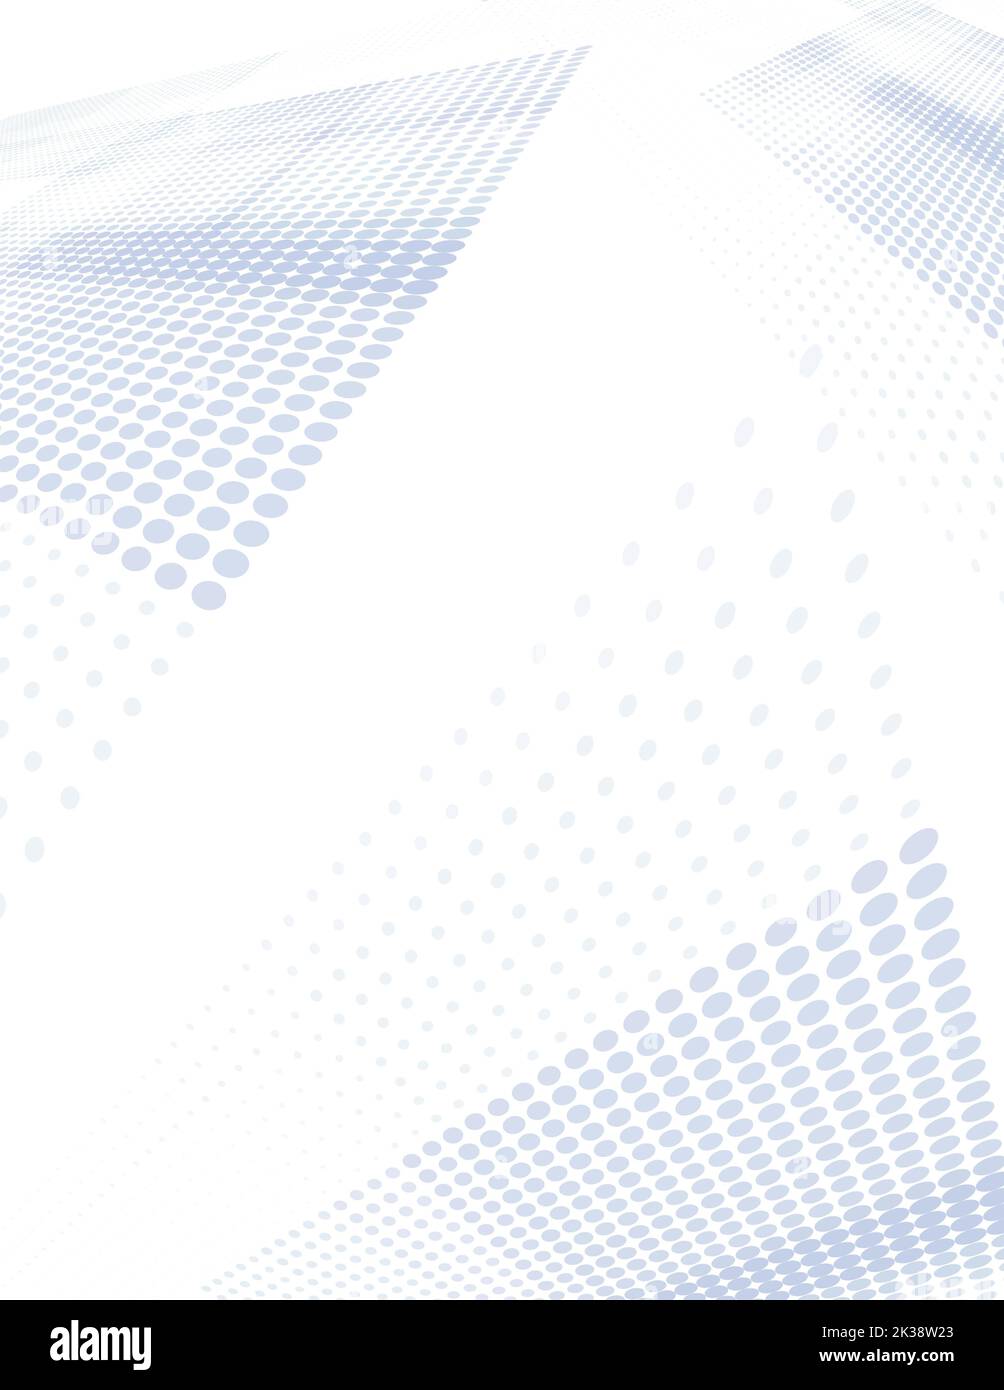 Fondo de perspectiva de semitonos abstracto con superficies inclinadas grises azuladas. Patrón gráfico rasterizado vertical Foto de stock